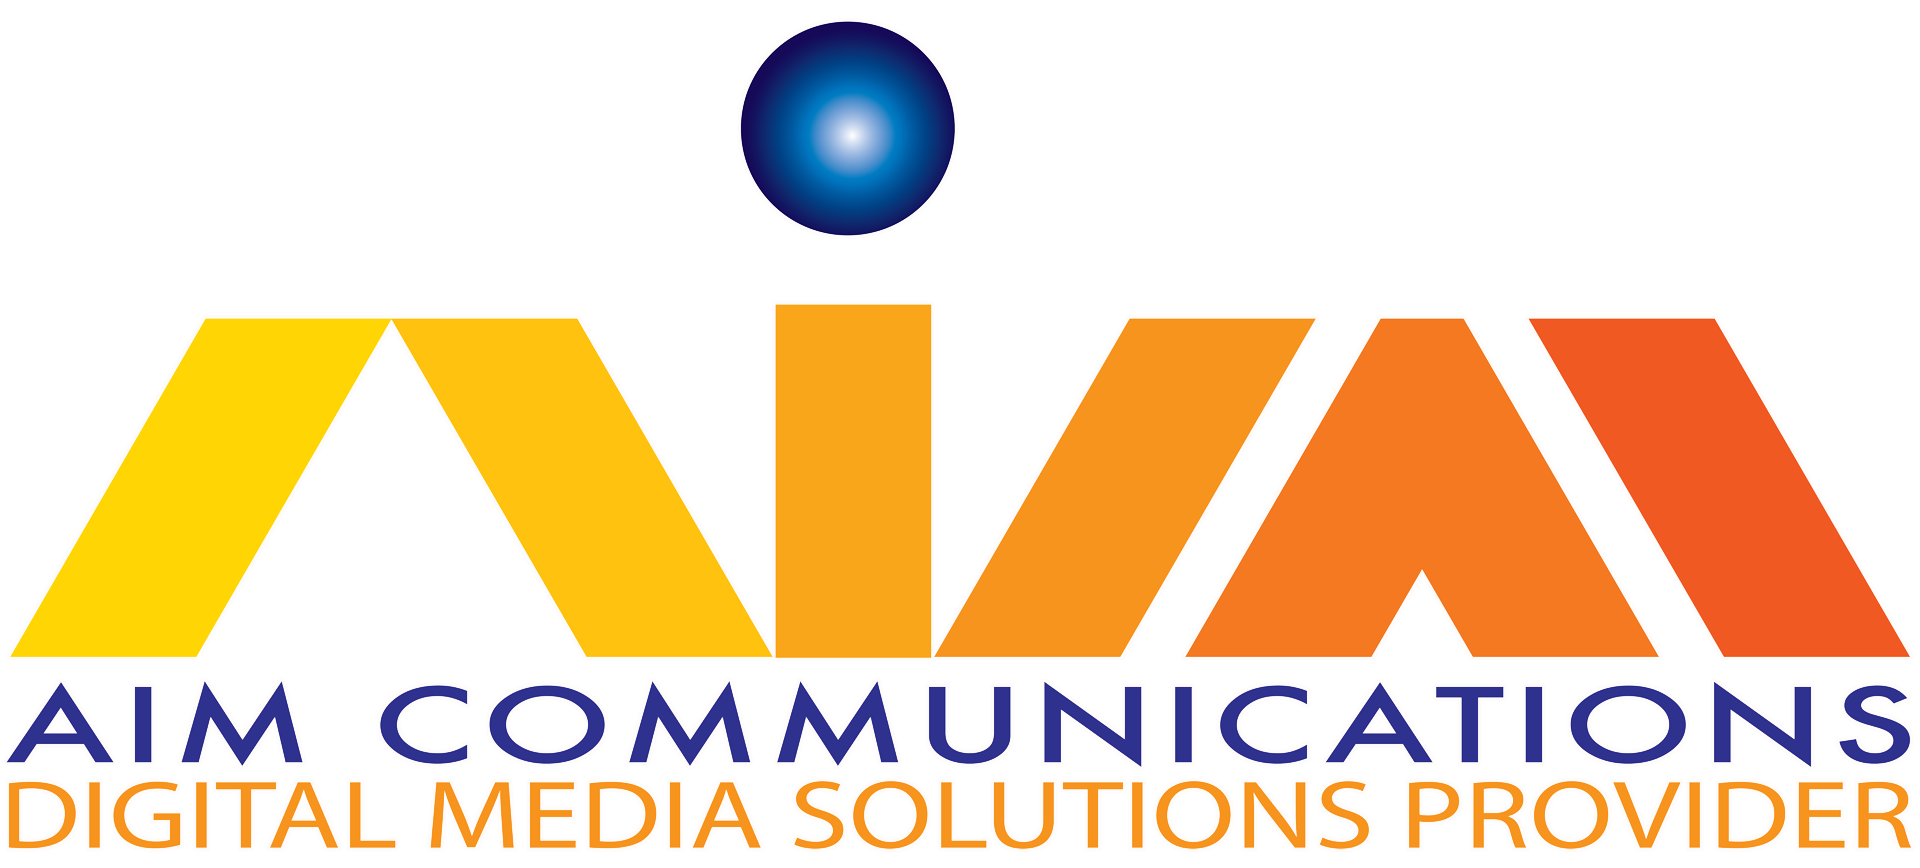 Aim Communications